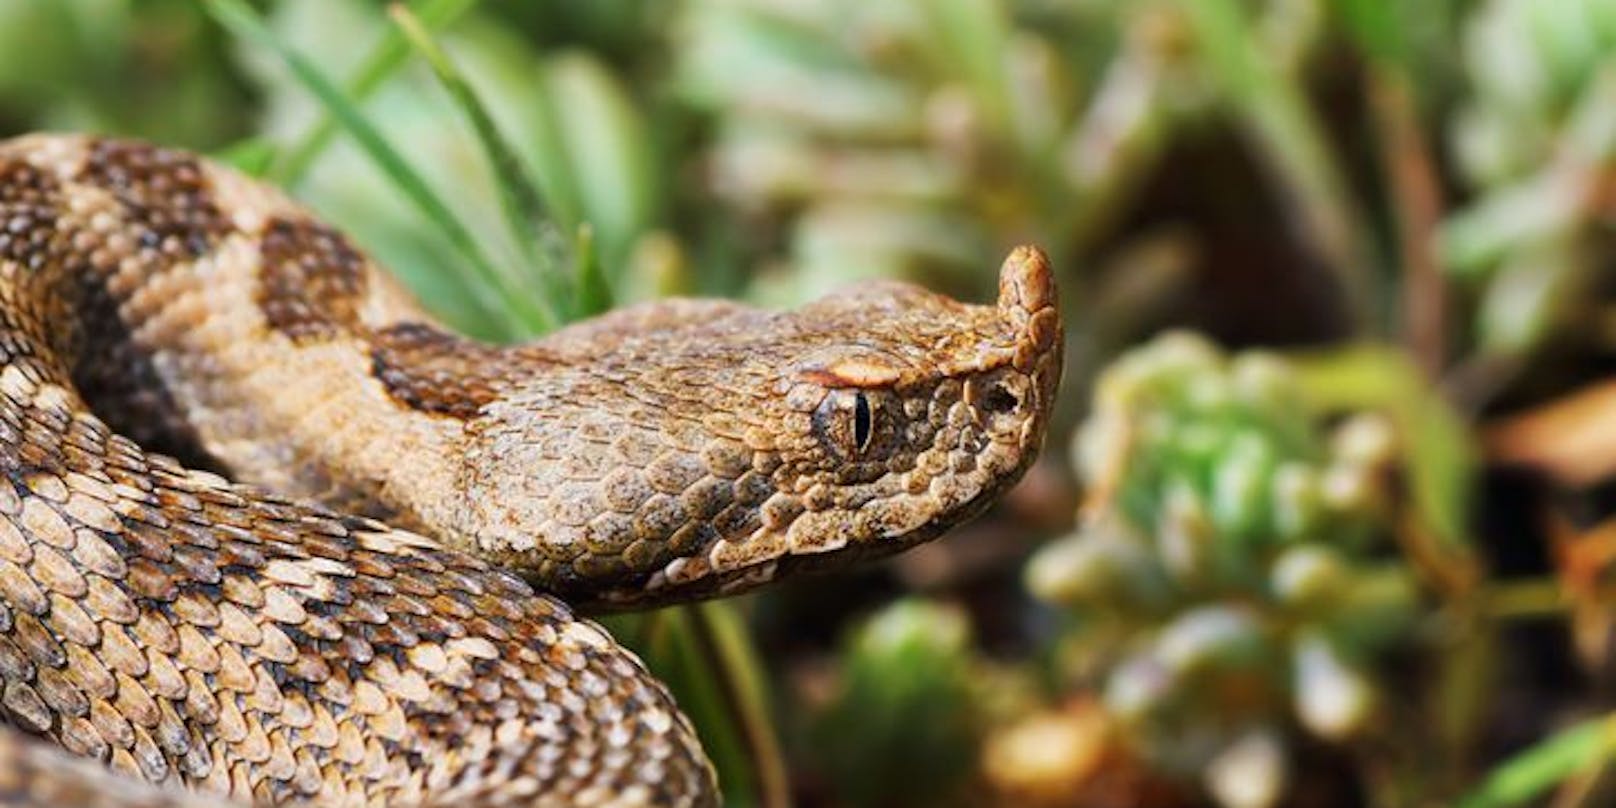 Die Hornviper gilt als eine der giftigsten Schlangen in Europa. Ihr Biss endete nun für einen 23-Jährigen tödlich.